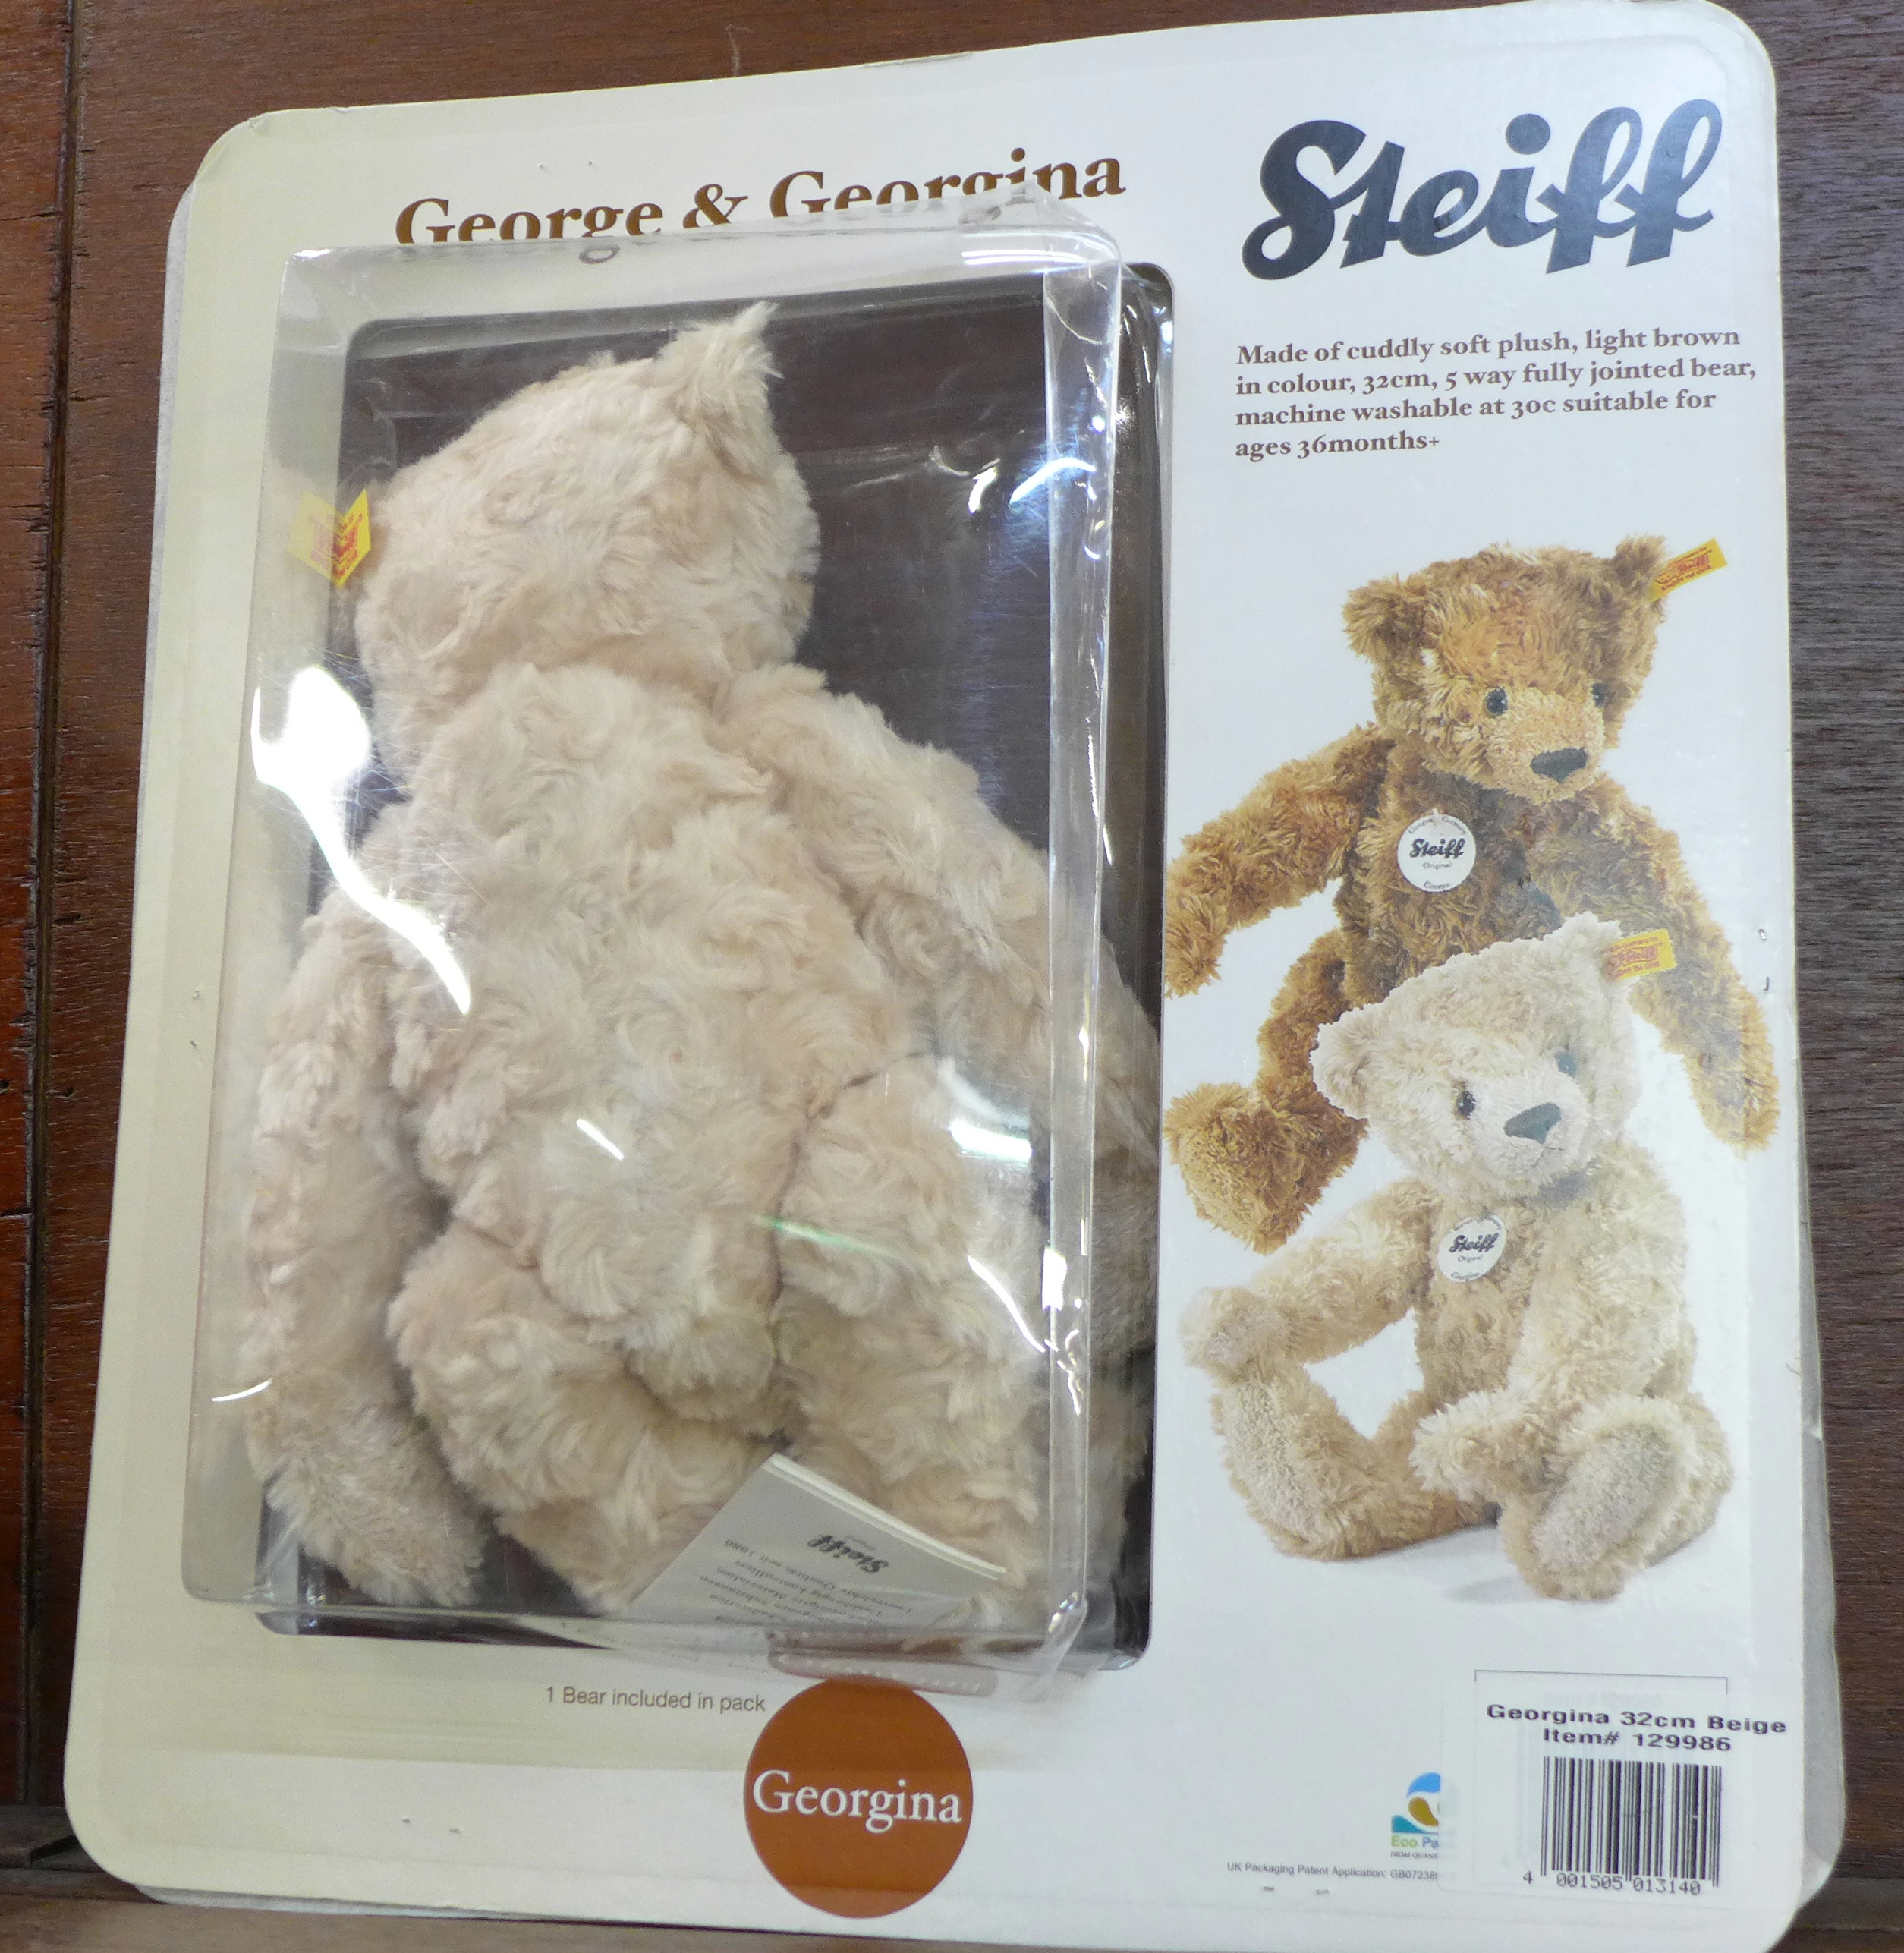 A Steiff Georgina Teddy bear, - Image 2 of 2